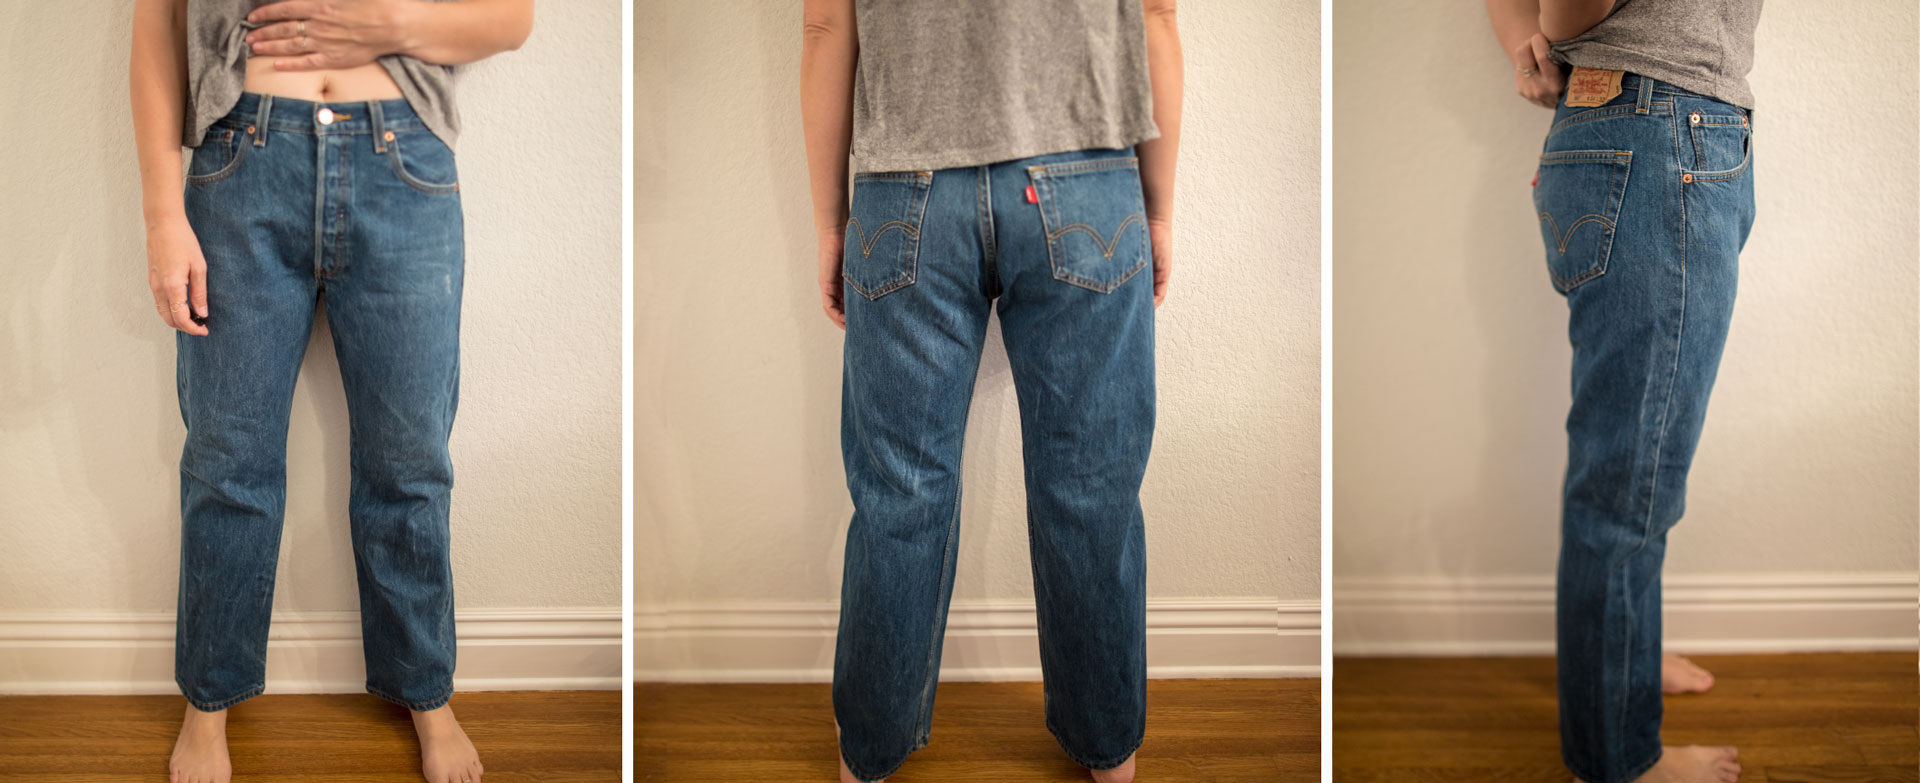 levis jeans men's size chart